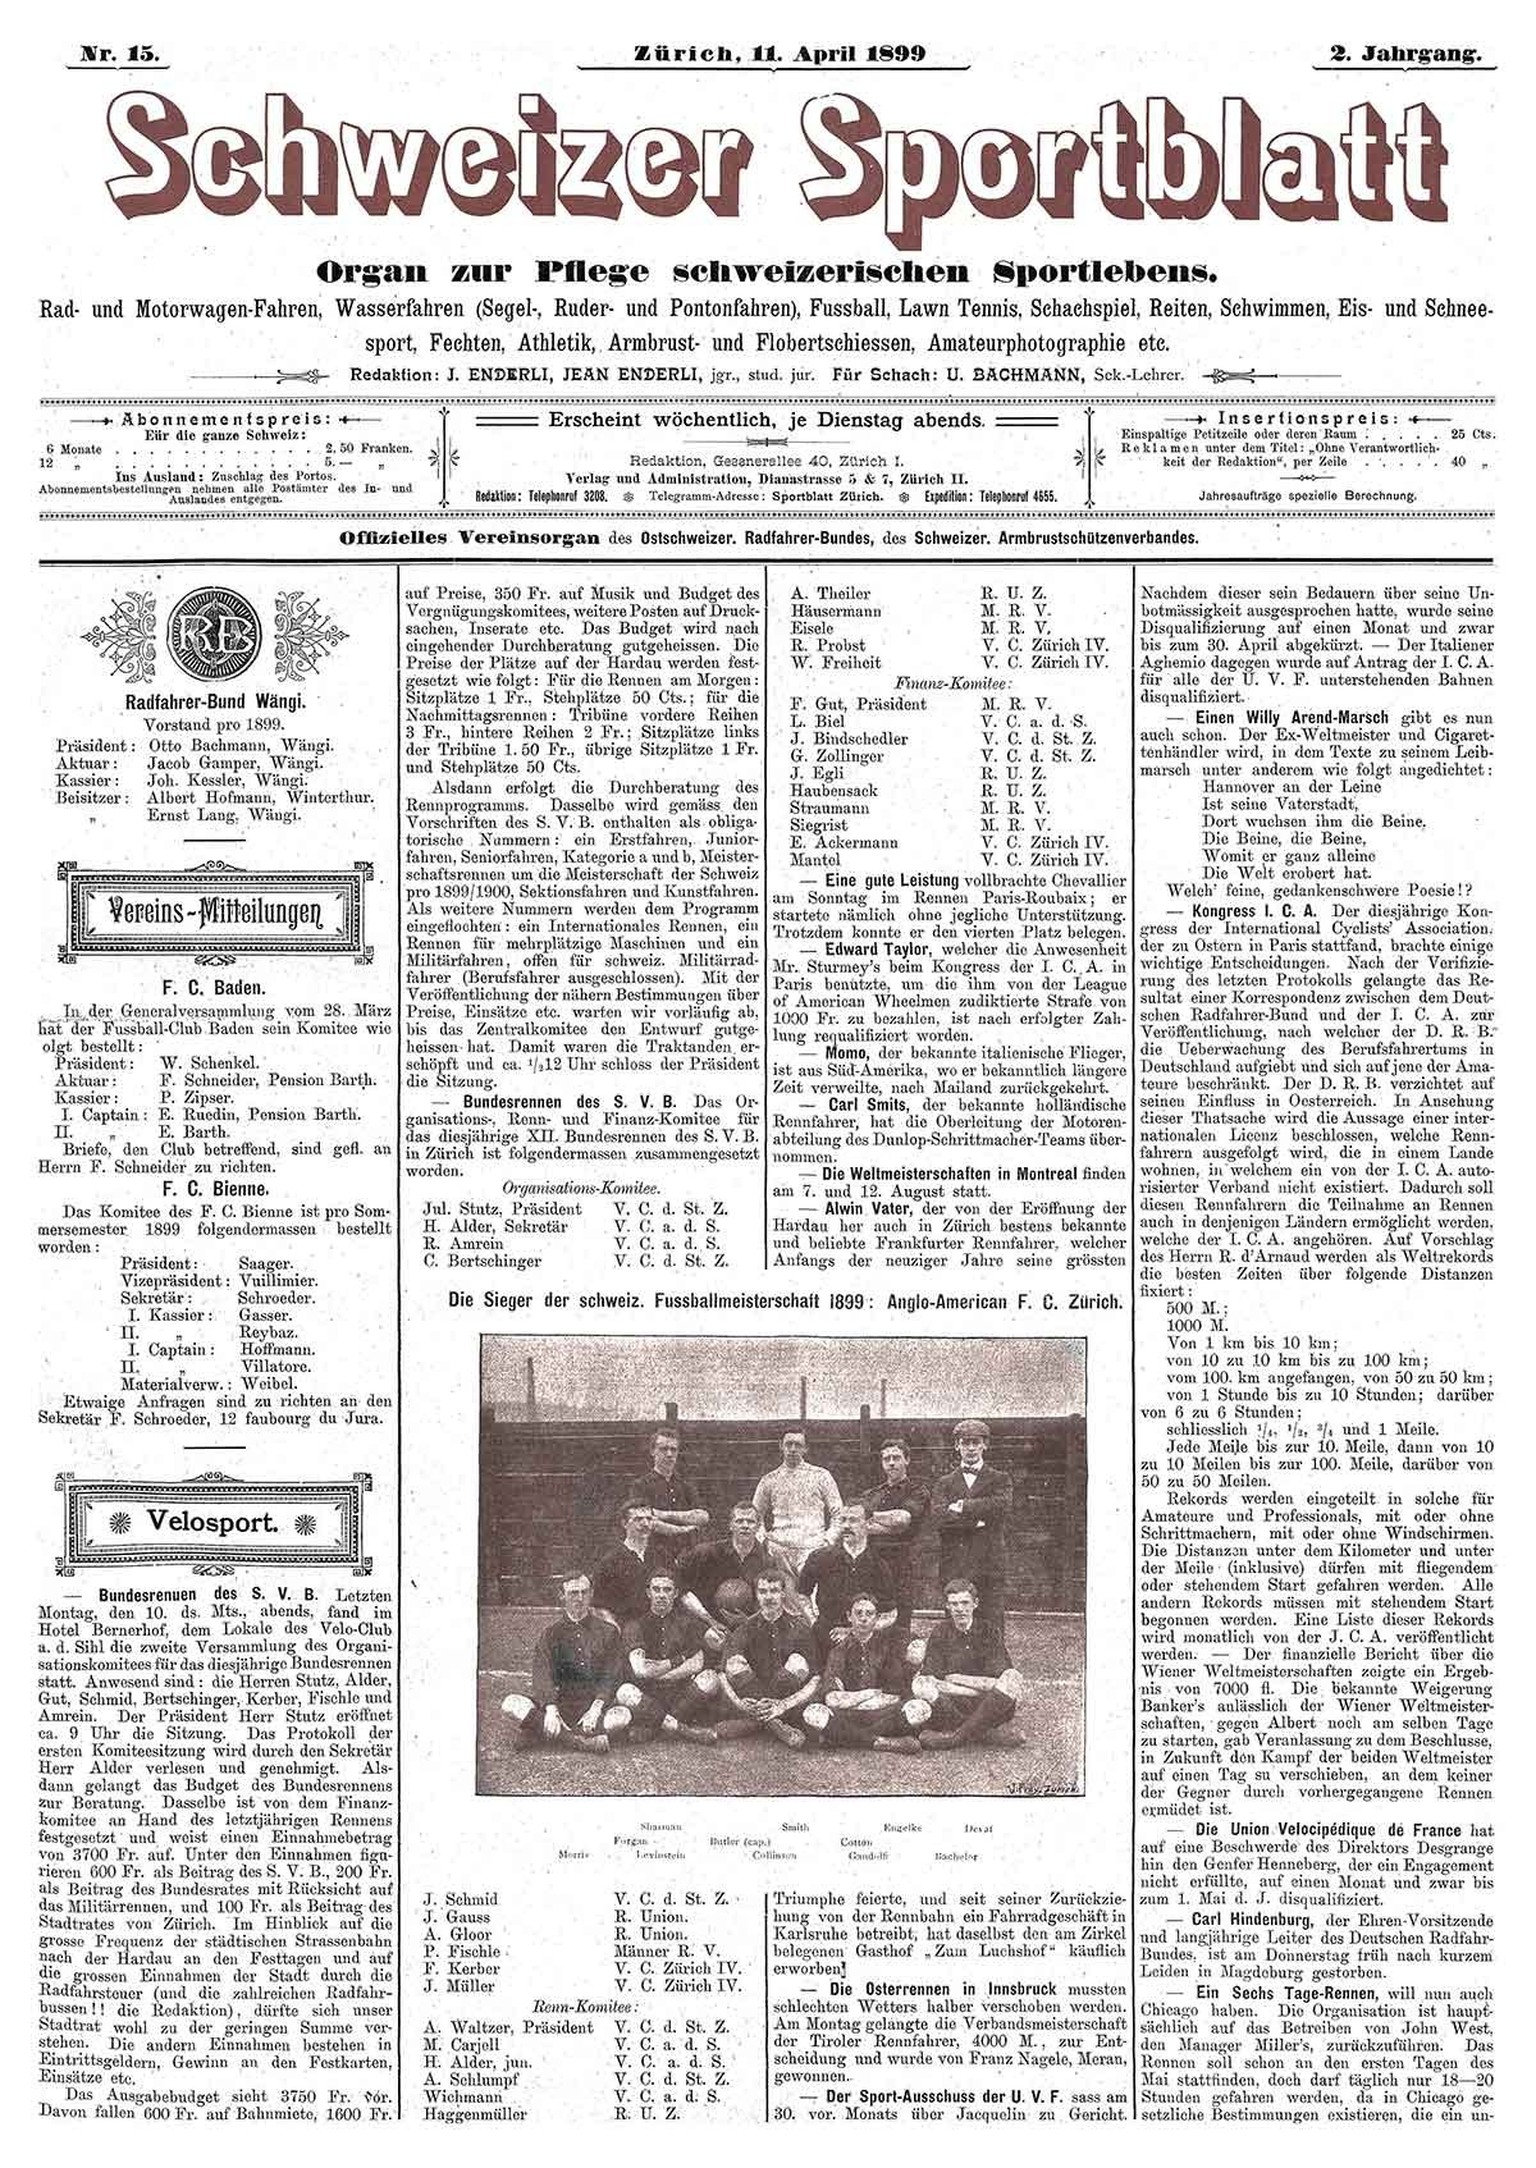 Der Schweizer Fussballmeister von 1899 hiess Anglo-American F. C..
https://www.e-periodica.ch/digbib/view?pid=spo-001:1899:2#60